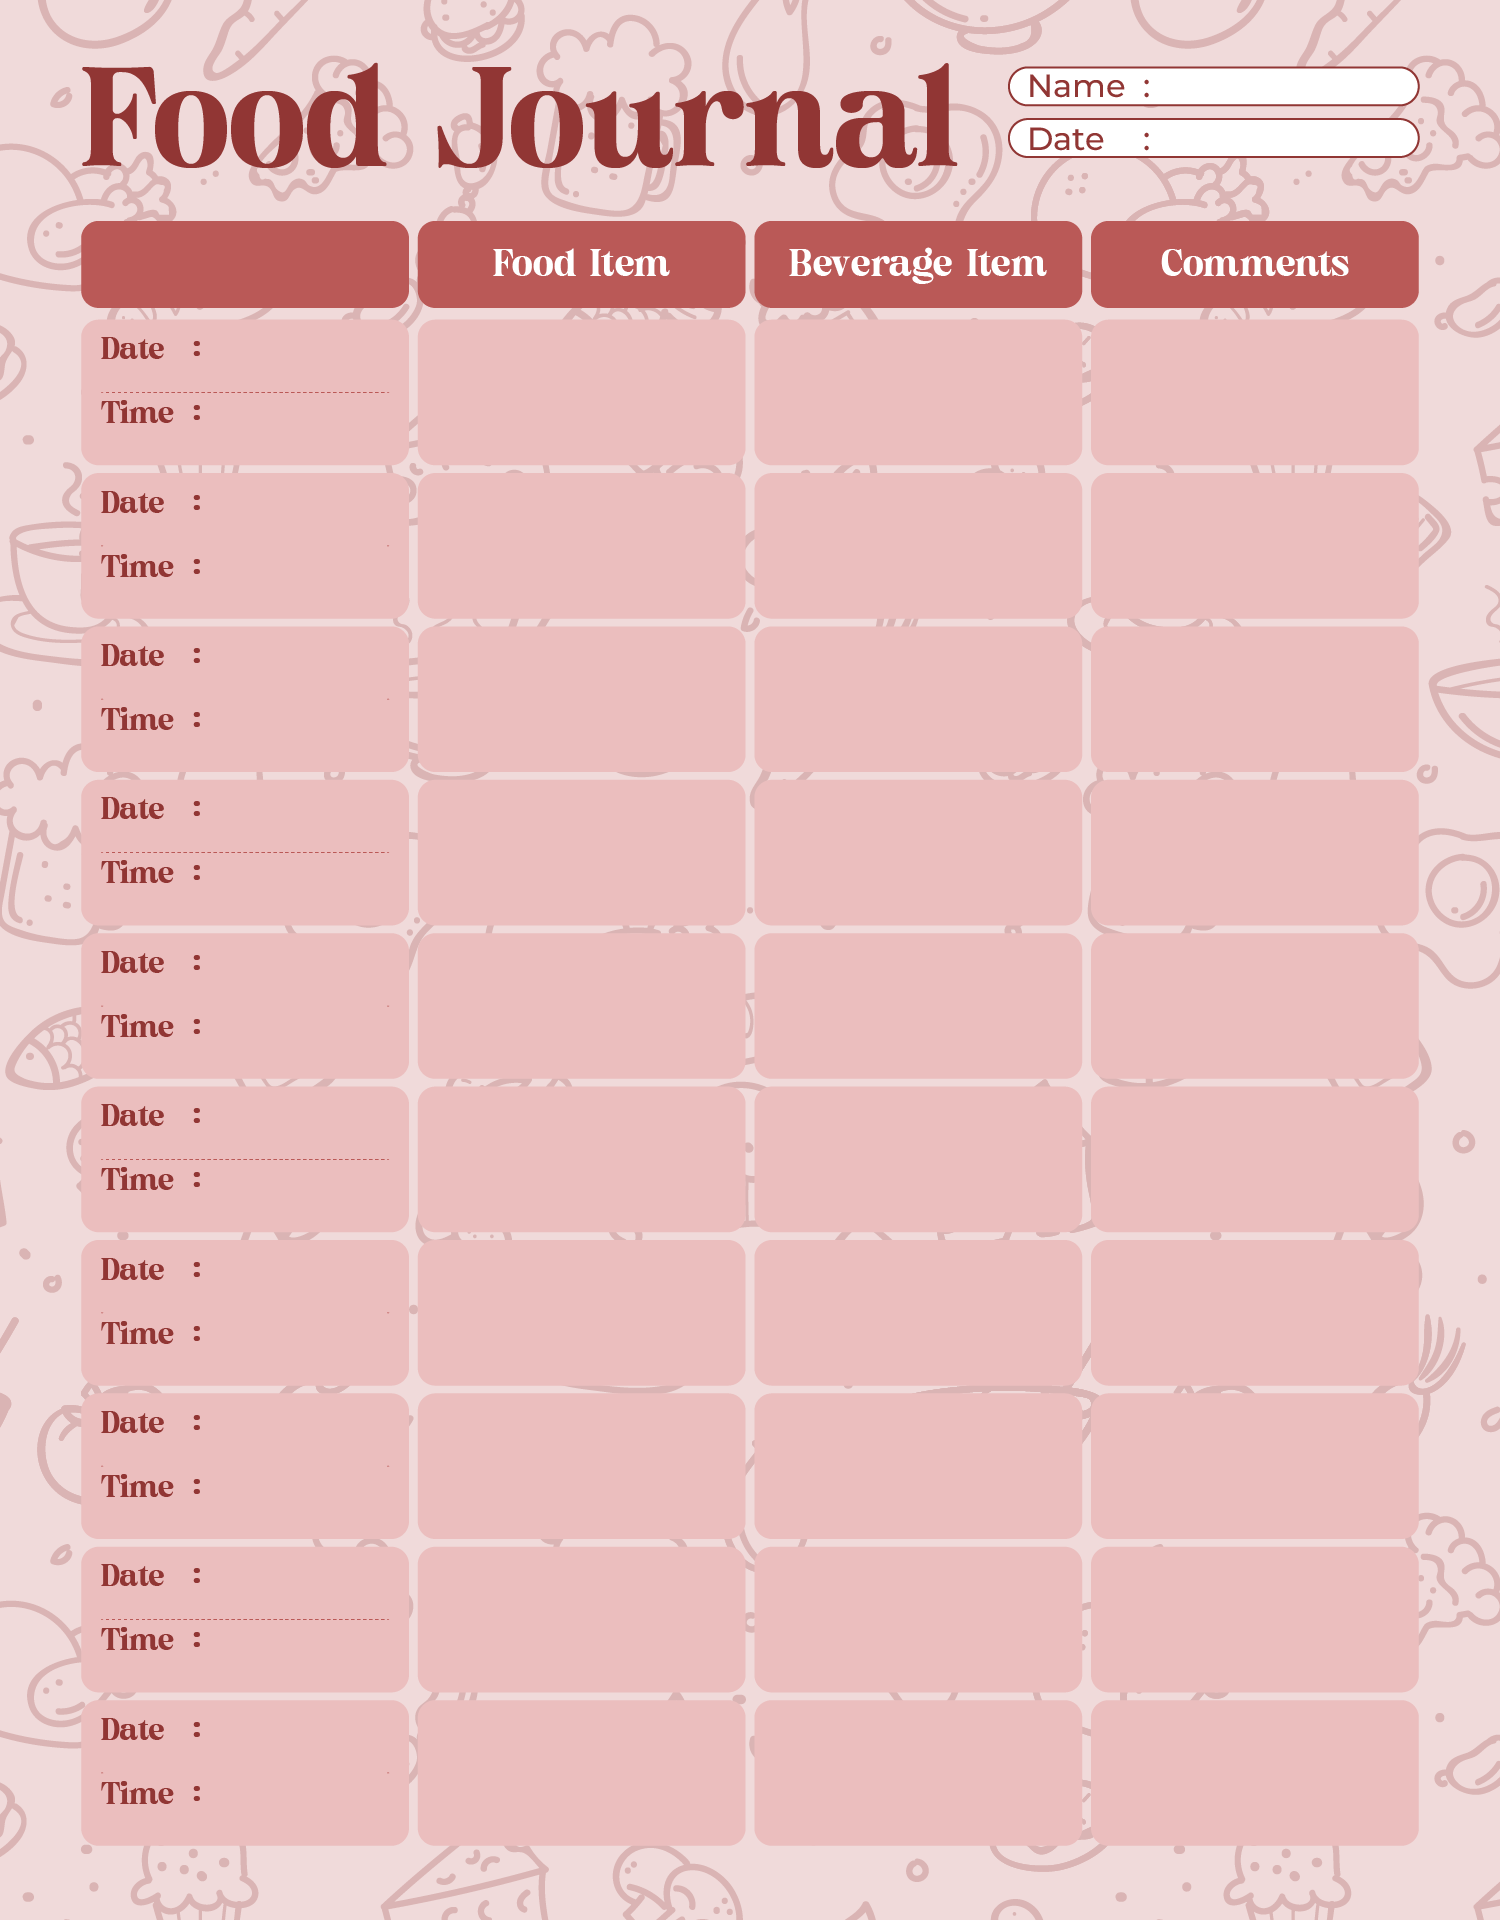 Food Journal Log Form